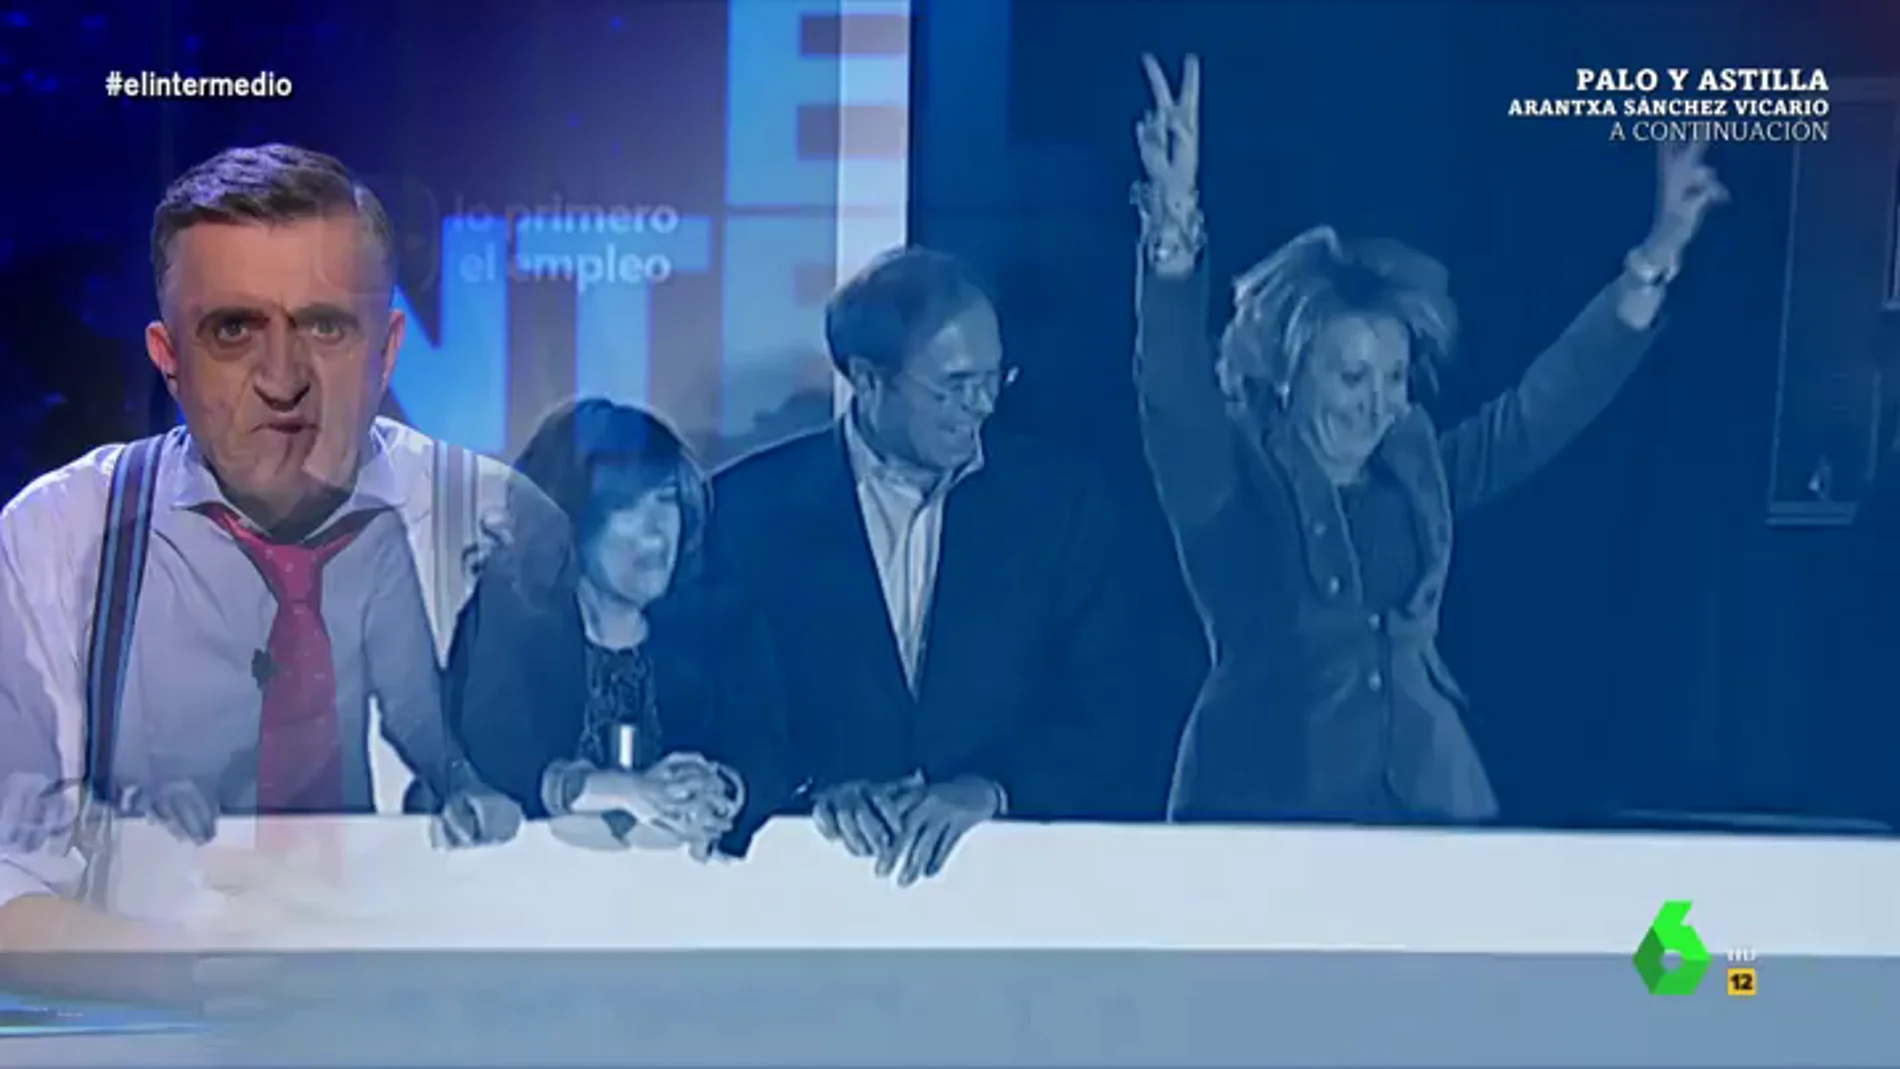 Los momentazos del PP en Génova 13: de las cosquillas de Aznar a Botella ante la mirada "no del todo clara de Rato" a los saltos de Aguirre